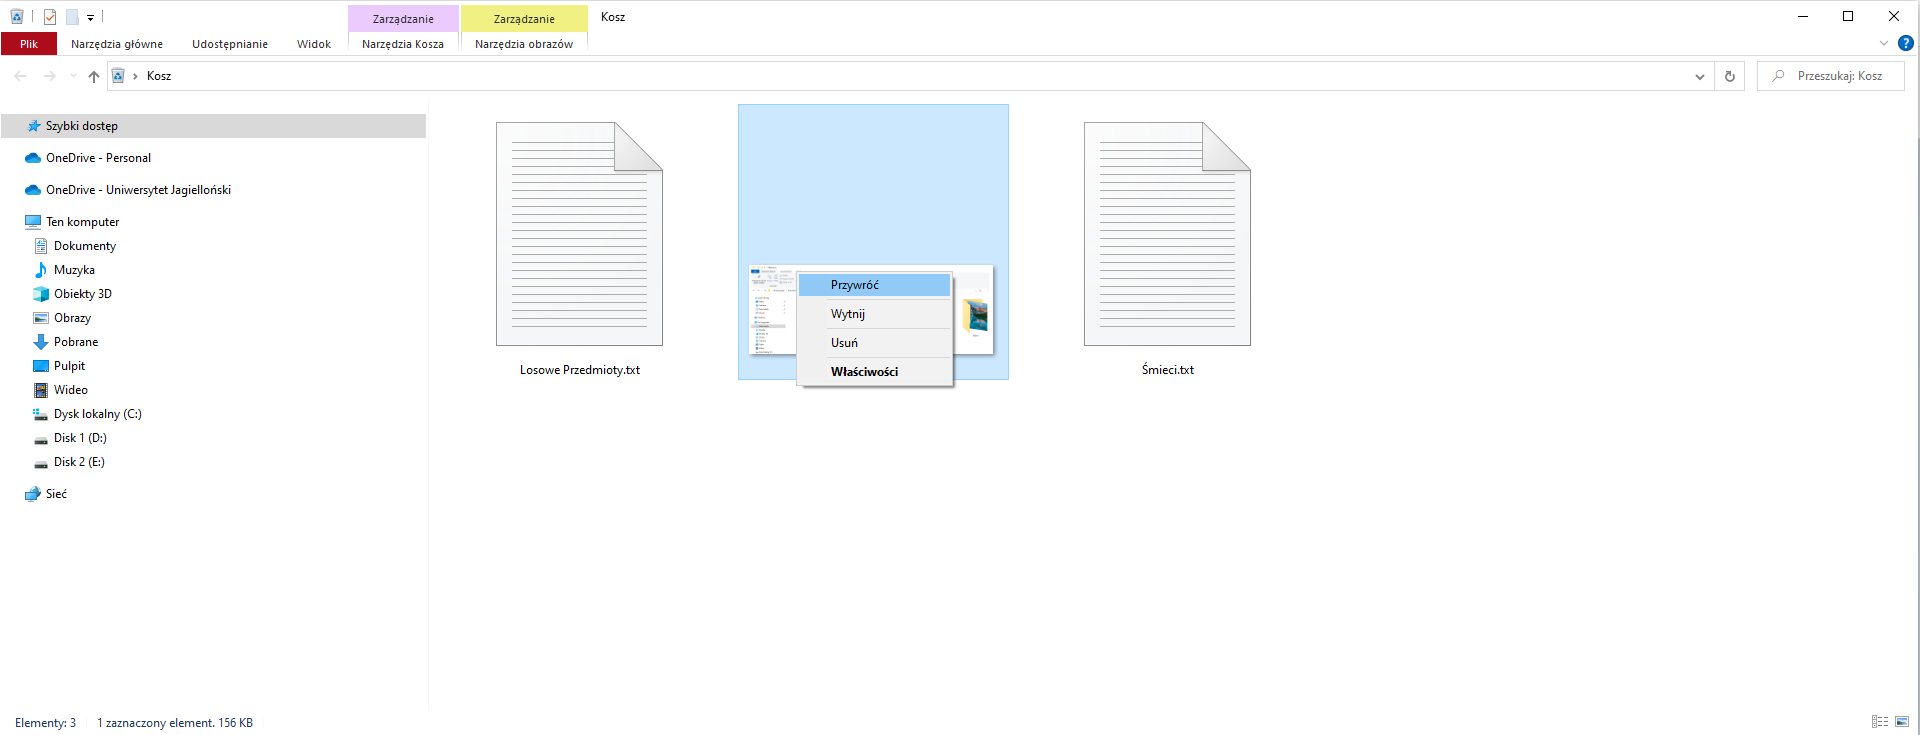 Zrzut ekranu Eksploratora plików z otwartym folderem koszem. W prawym górnym rogu znajduje się nazwa bieżącego otwartego folderu "Moje prace", poniżej znajdują się zakładki "Pliki", "Narzędzia główne", "Udostępnianie", "Widok" oraz dwie zakładki zarządzania "Narzędzia Kosza", "Narzędzia obrazów". W drzewie folderów po lewej stronie znajdują się "Szybki dostęp",  "OneDrive - Personal", "OneDrive - Uniwersytet Jagielloński" oraz "Ten komputer" - "Dokumenty", "Muzyka", "Obiekty 3D", "Obrazy", "Pulpit", "Wideo", "Dysk lokalny (C:)", "Disk 1 (D:), "Disk 2 (E:)", "Sieć". W koszu znajdują się pliki "Losowe Przedmioty.txt", "Śmieci.txt" oraz zaznaczone zdjęcie z aktywnym menu kontekstowym. W menu kontekstowym dostępne są opcje "Przywróć" (podświetlony), "Wytnij", "Usuń", "Właściwości". 